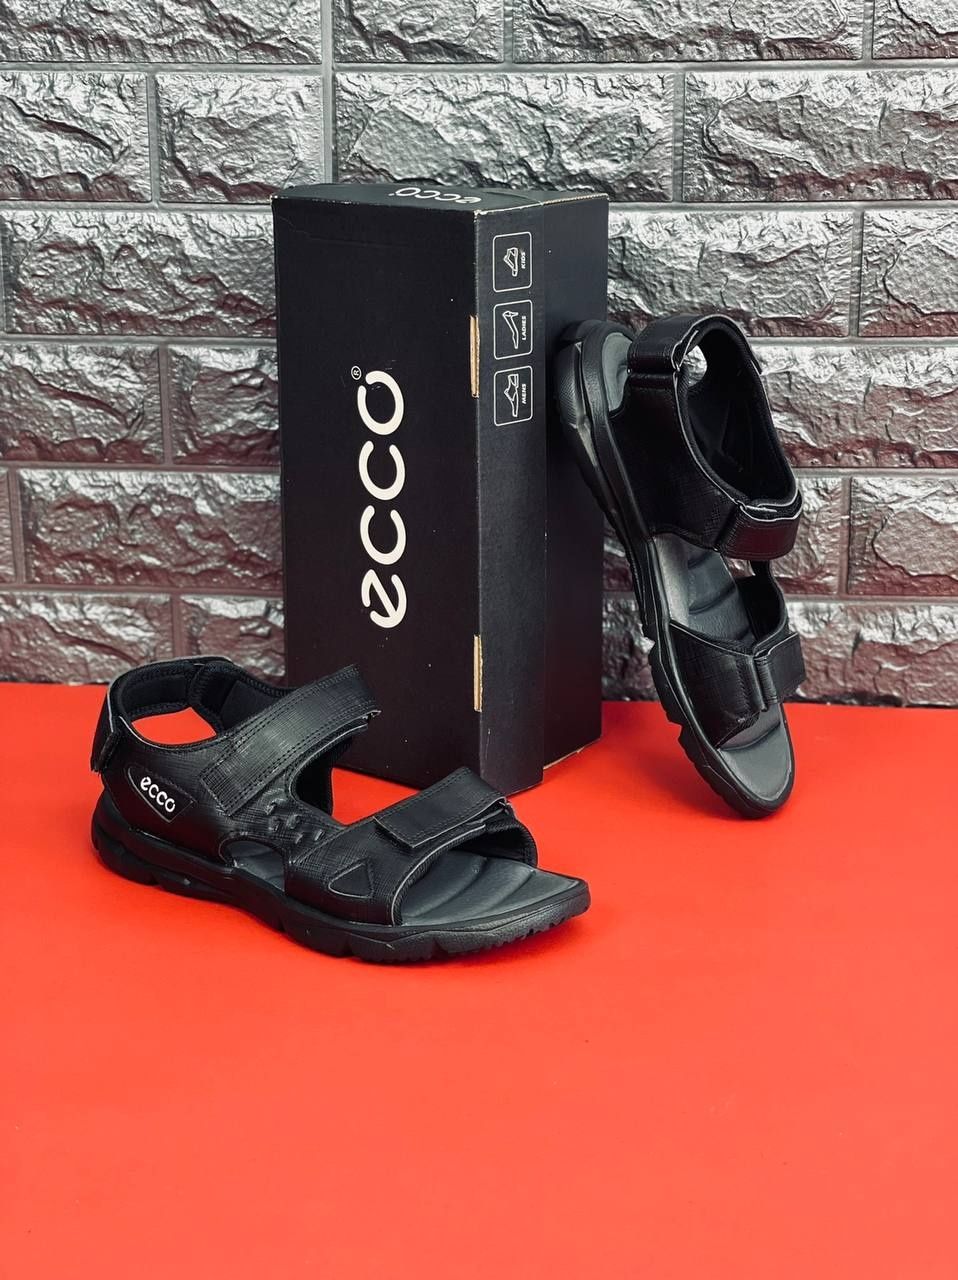 Мужские сандалии чёрного цвета на липучке ECCO 40-45